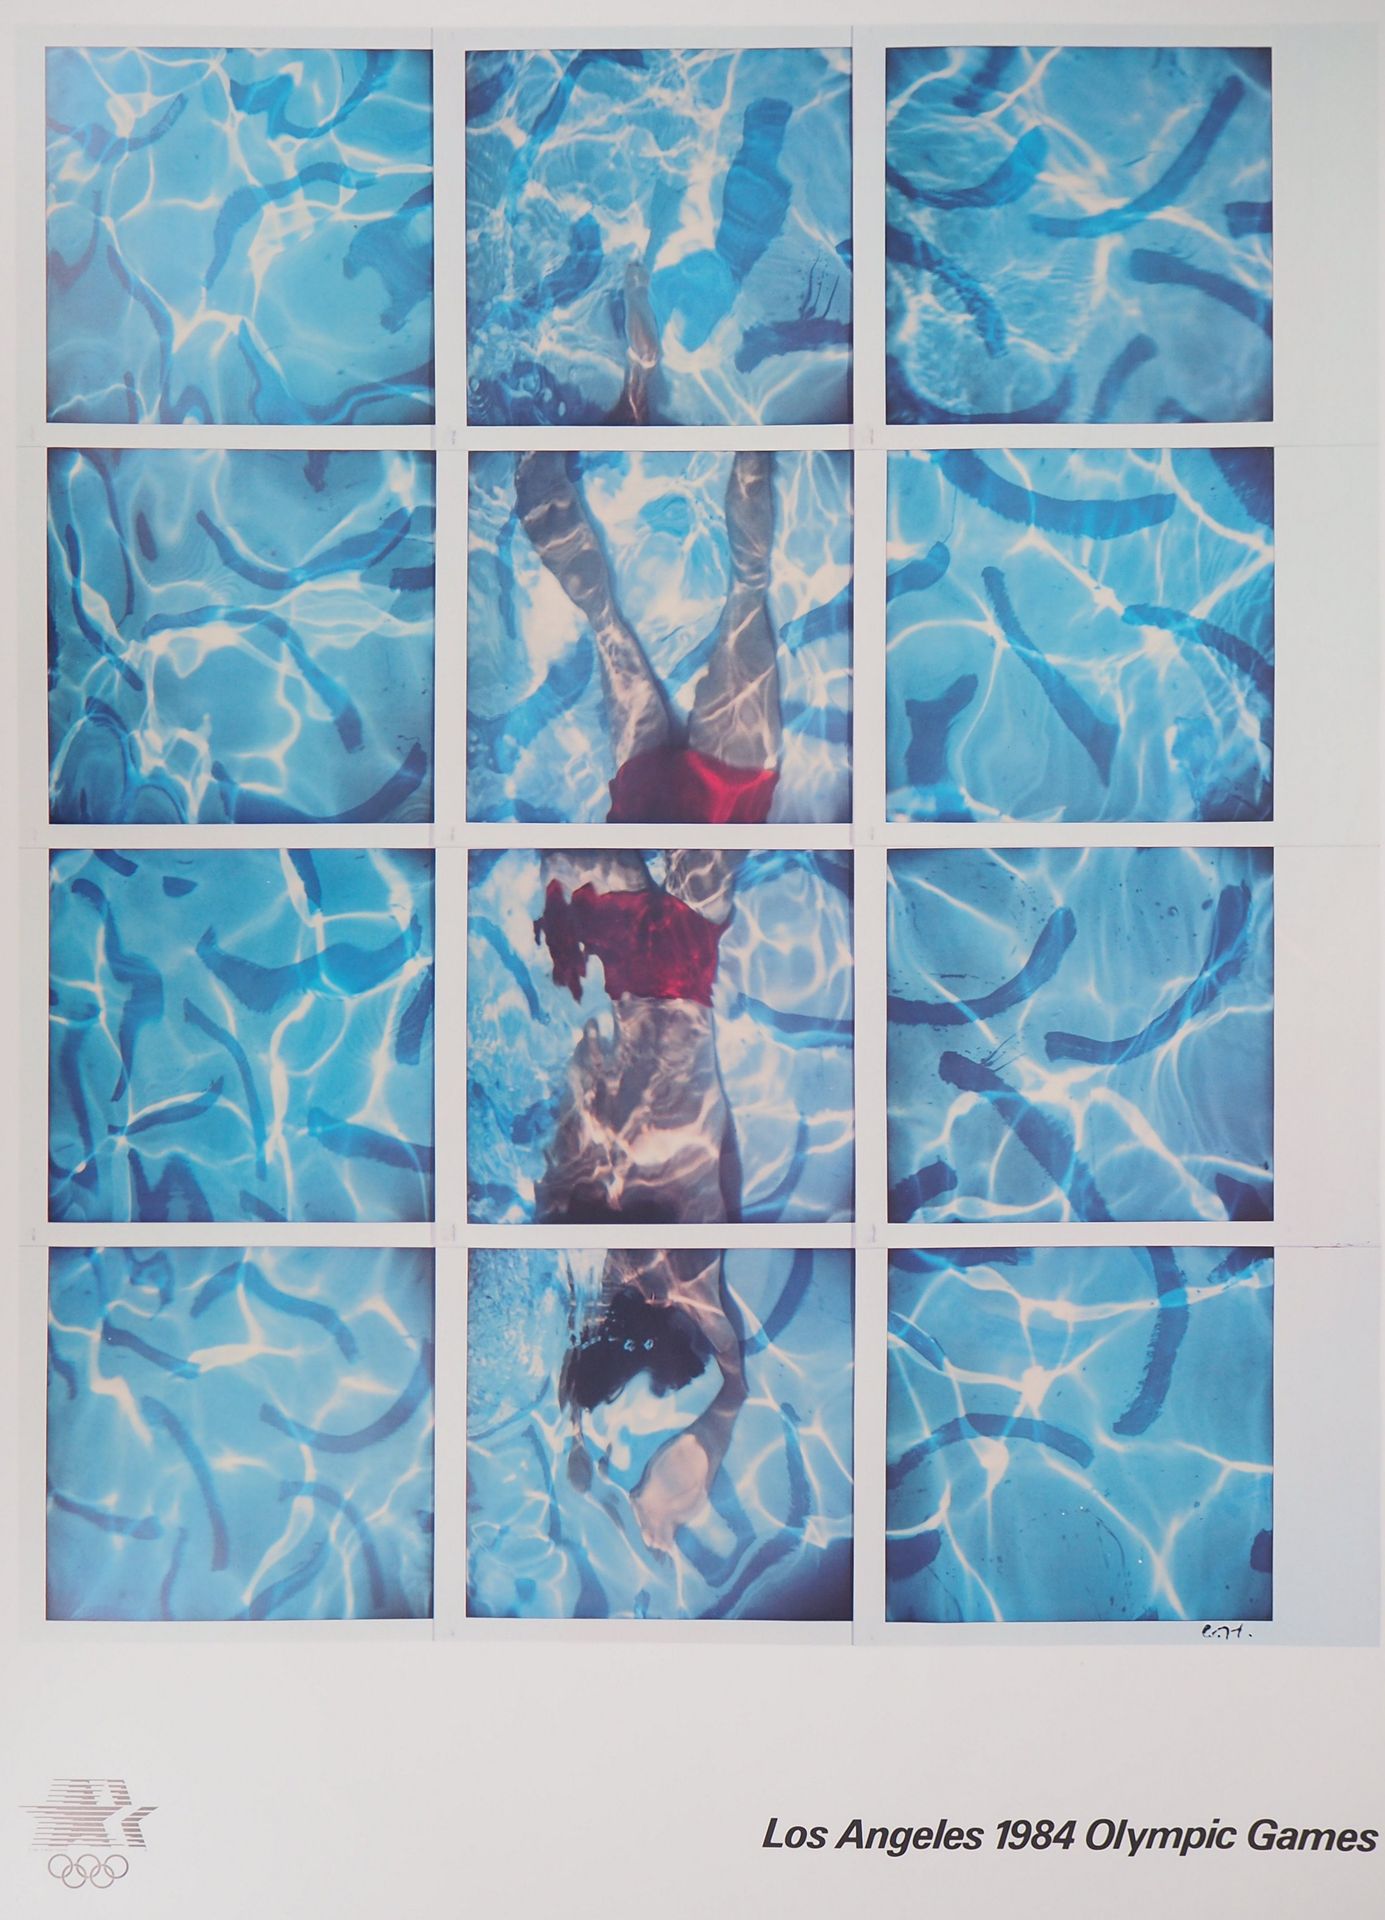 David HOCKNEY 大卫-霍克尼

游泳运动员，泳池潜水员，1982年

胶版印刷

板块中的签名

纸上91.4 x 61厘米

为洛杉矶奥运会创作，&hellip;